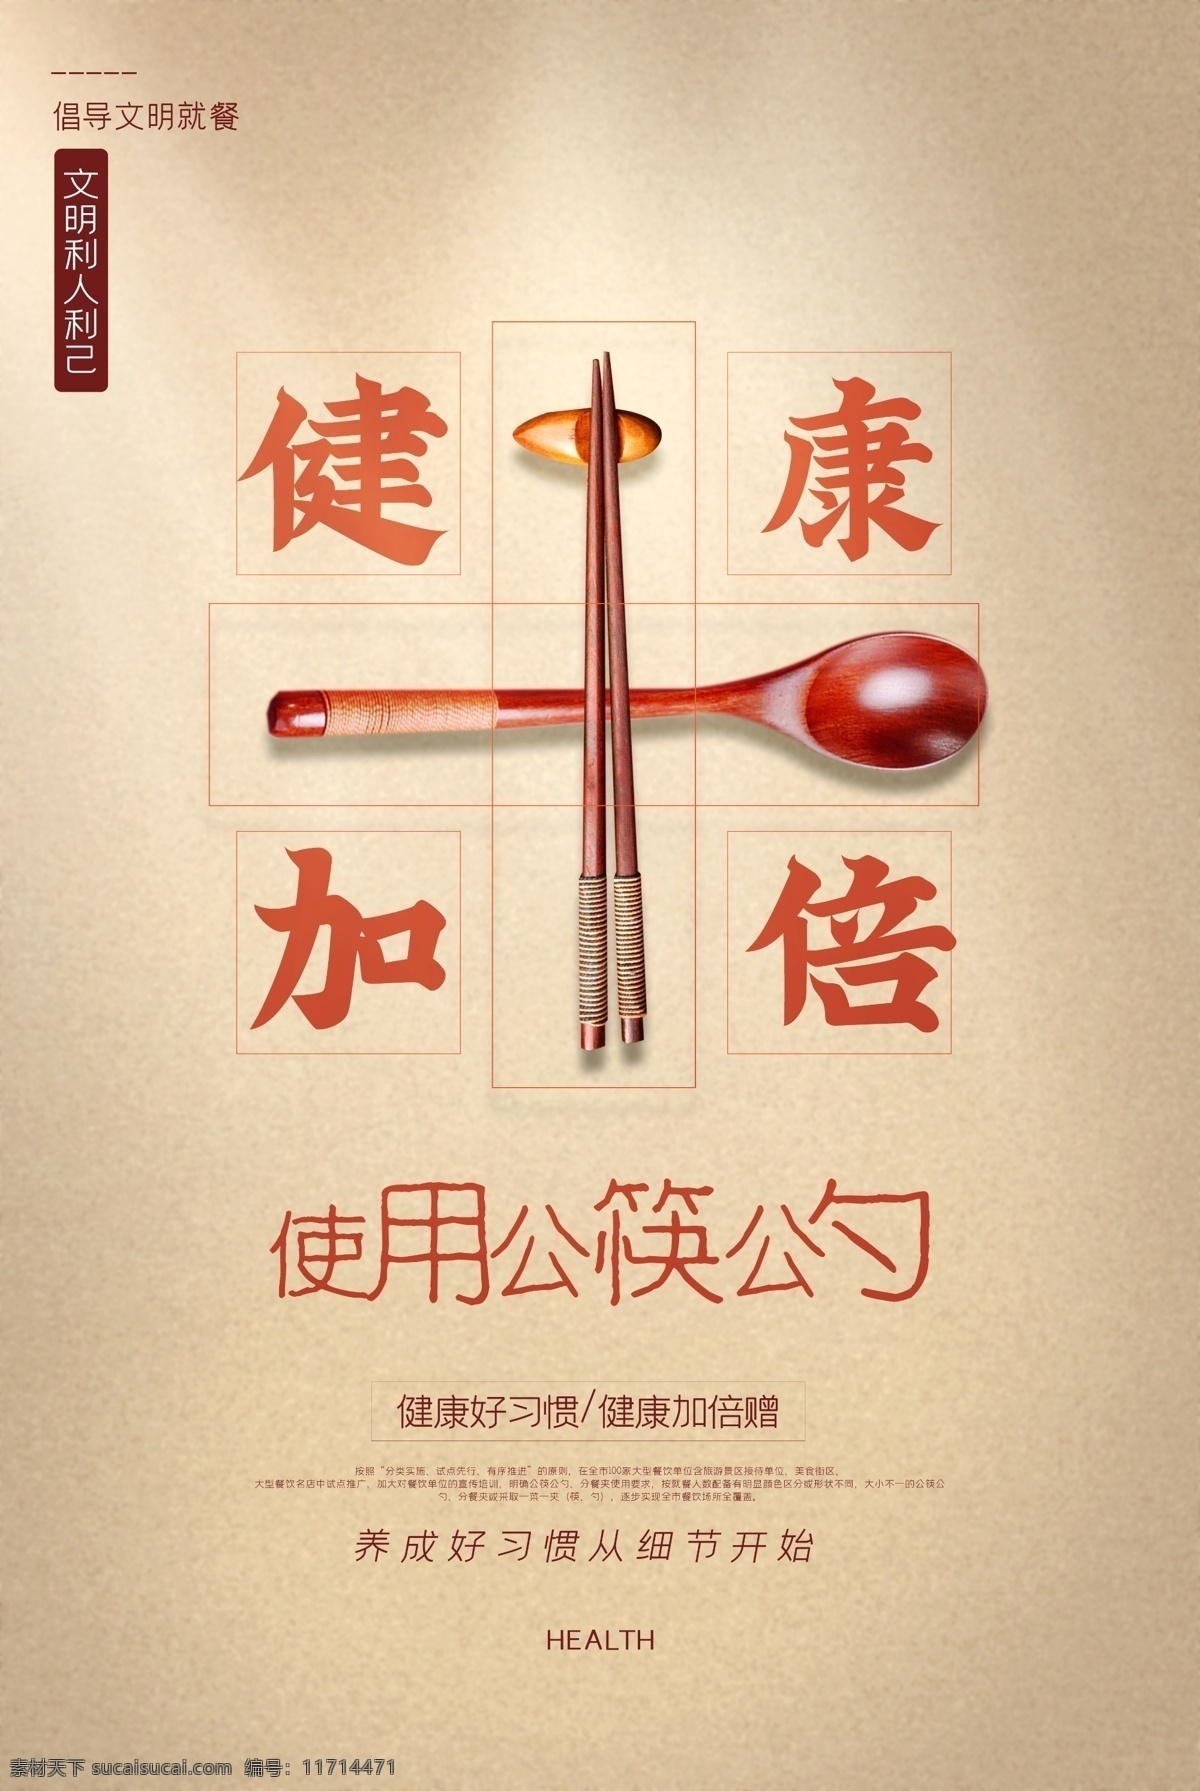 公 筷 勺 公益活动 海报 素材图片 公筷公勺 公益 活动 社会 宣传